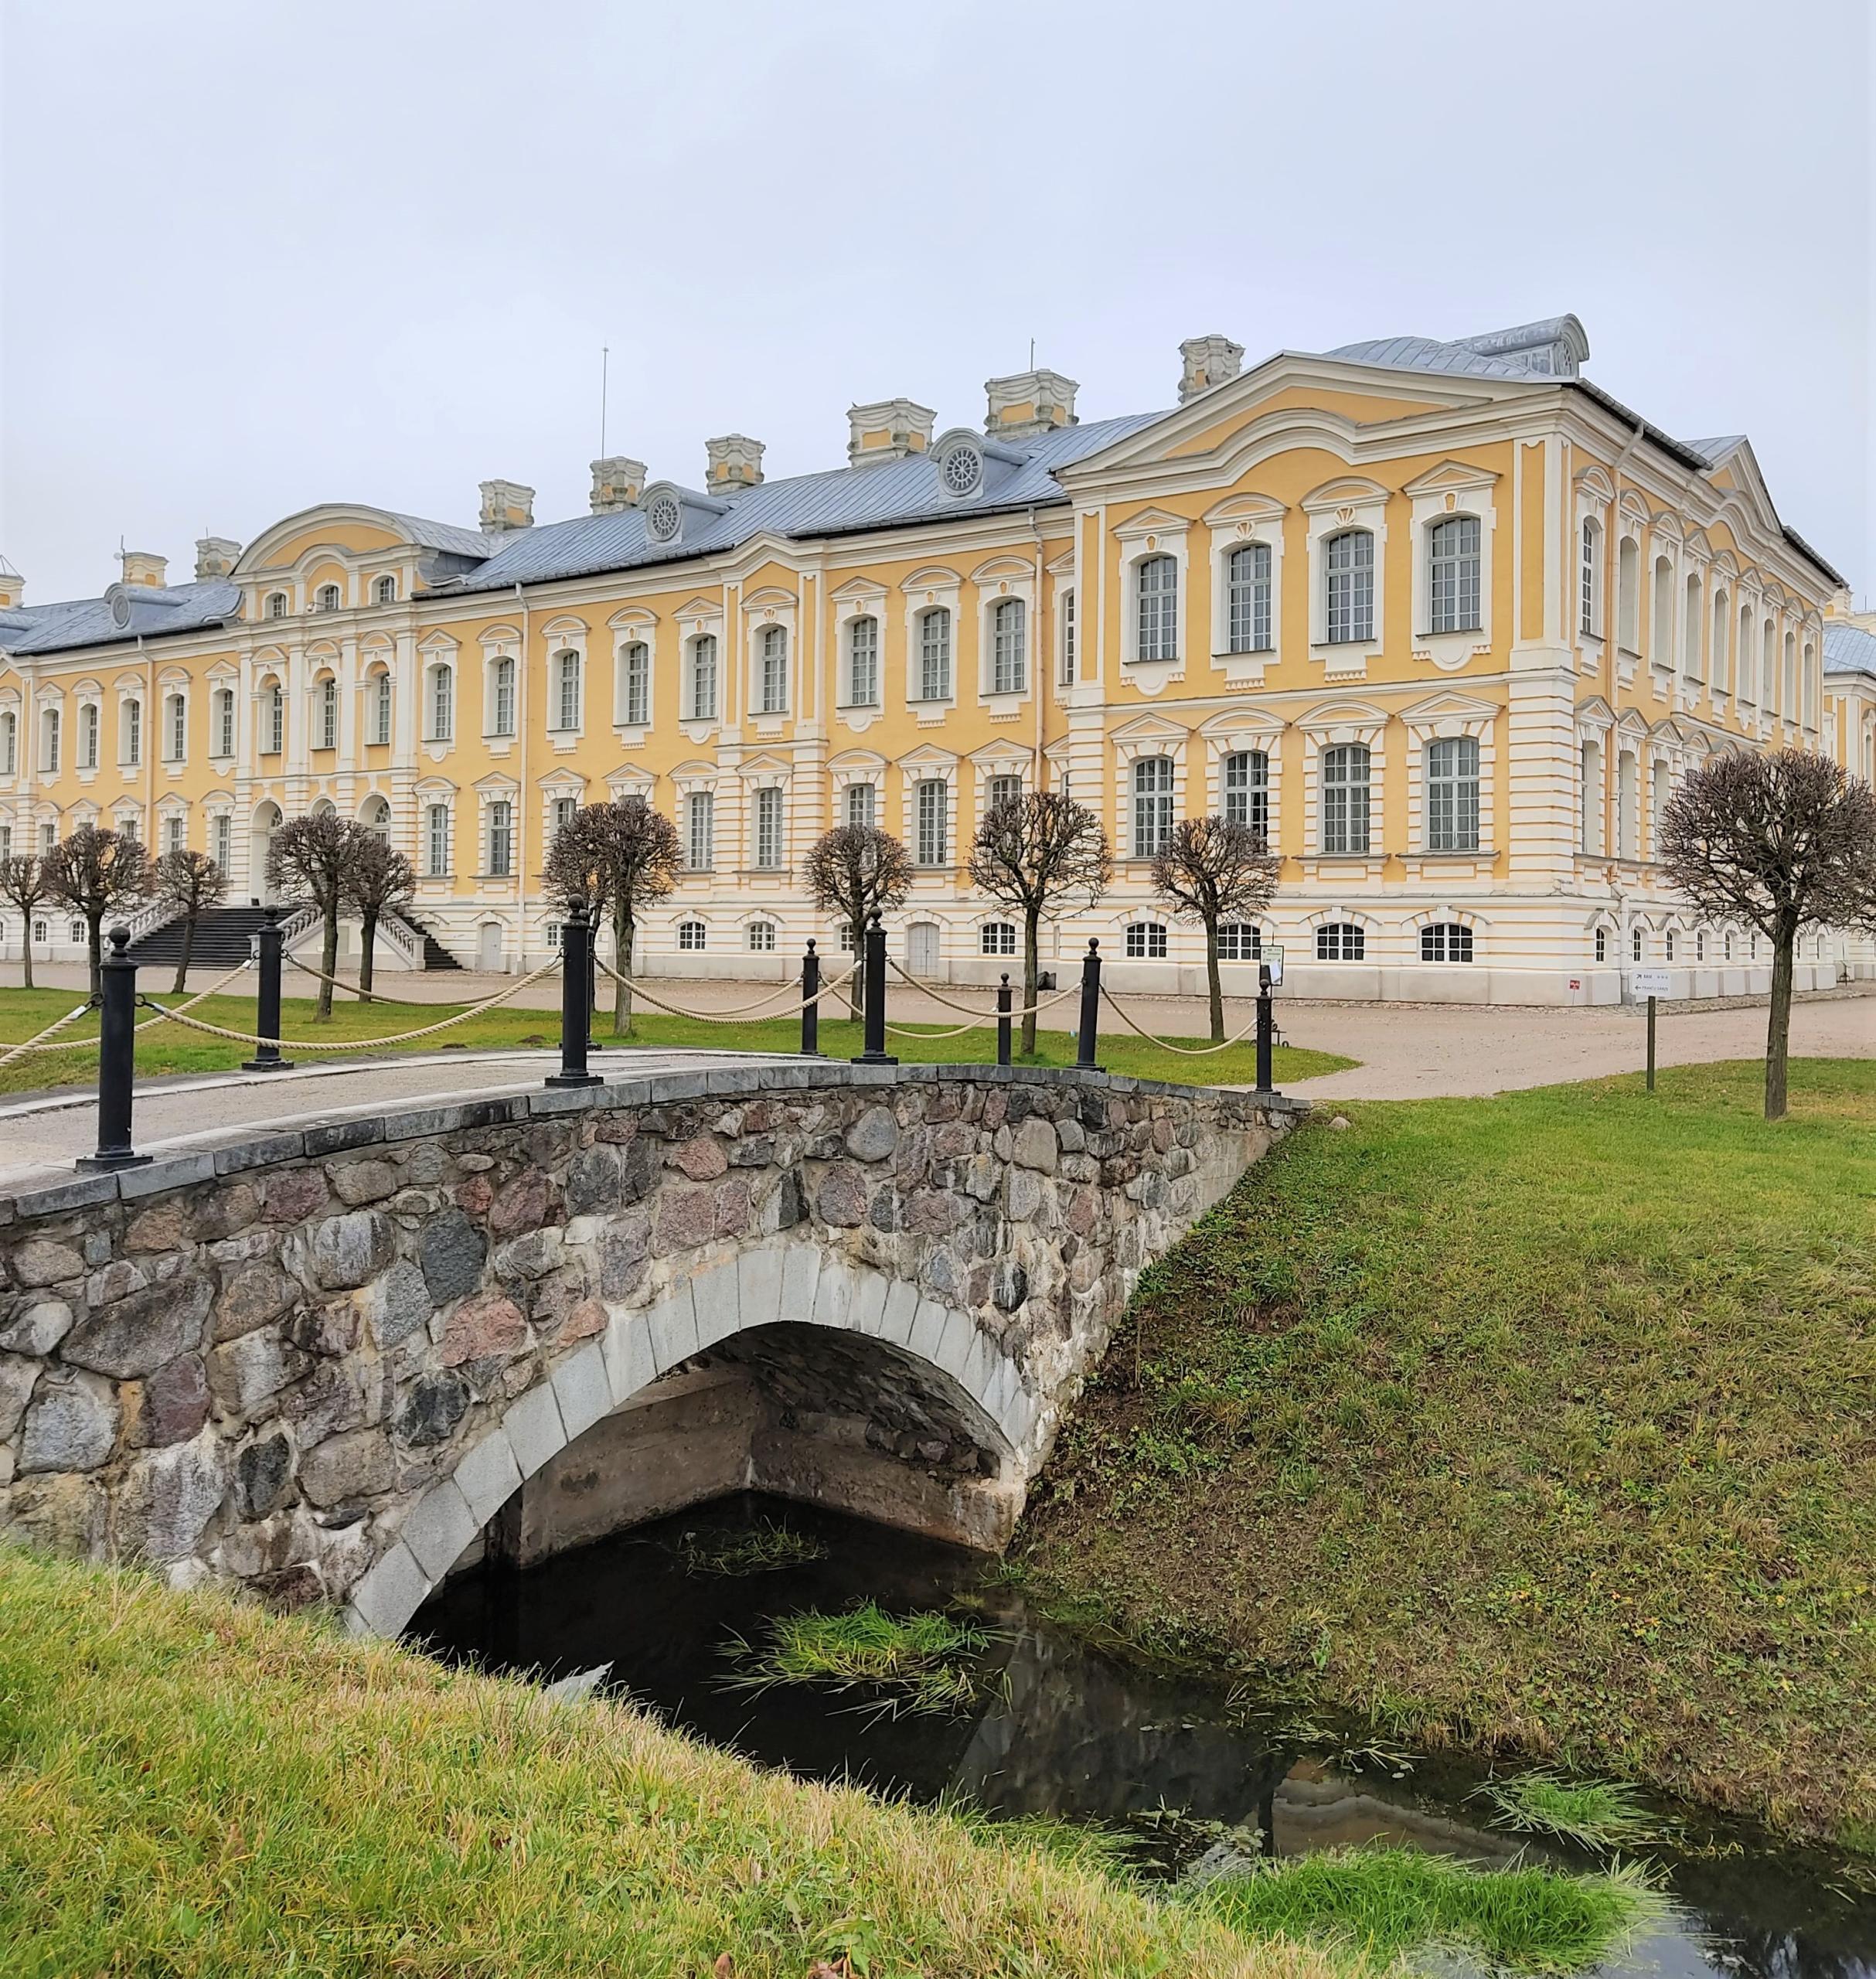 Rundālen palatsi | Linnoja Latviassa | Elämää Nomadina blogi